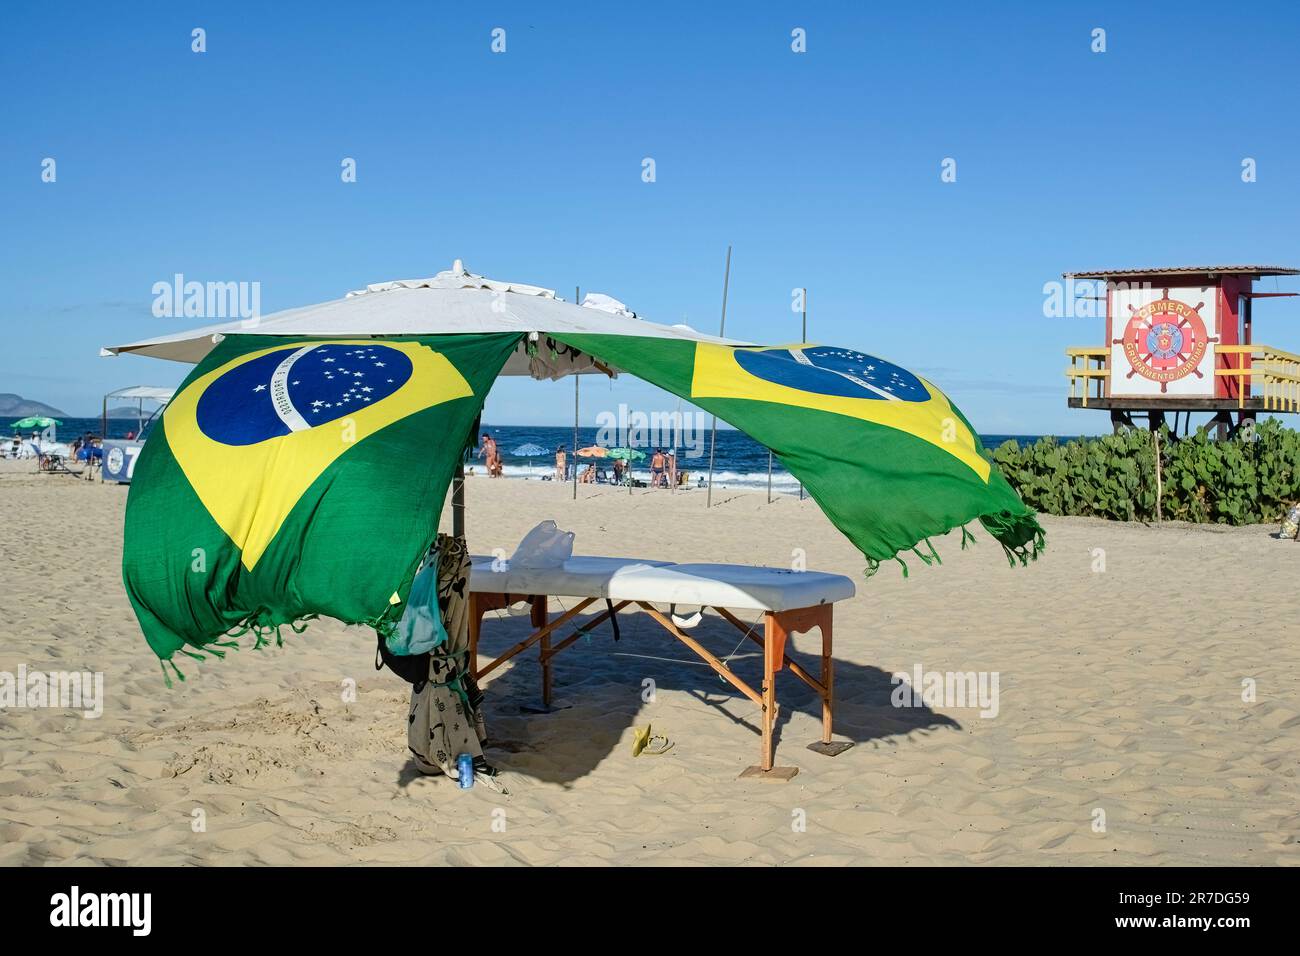 Rio de Janeiro, Brasilien - 25. Mai 2023: Ein Sonnenschirm mit brasilianischen Flaggen steht auf dem Sand und bietet Schatten für eine Bank. Die Leute entspannen sich an den s Stockfoto